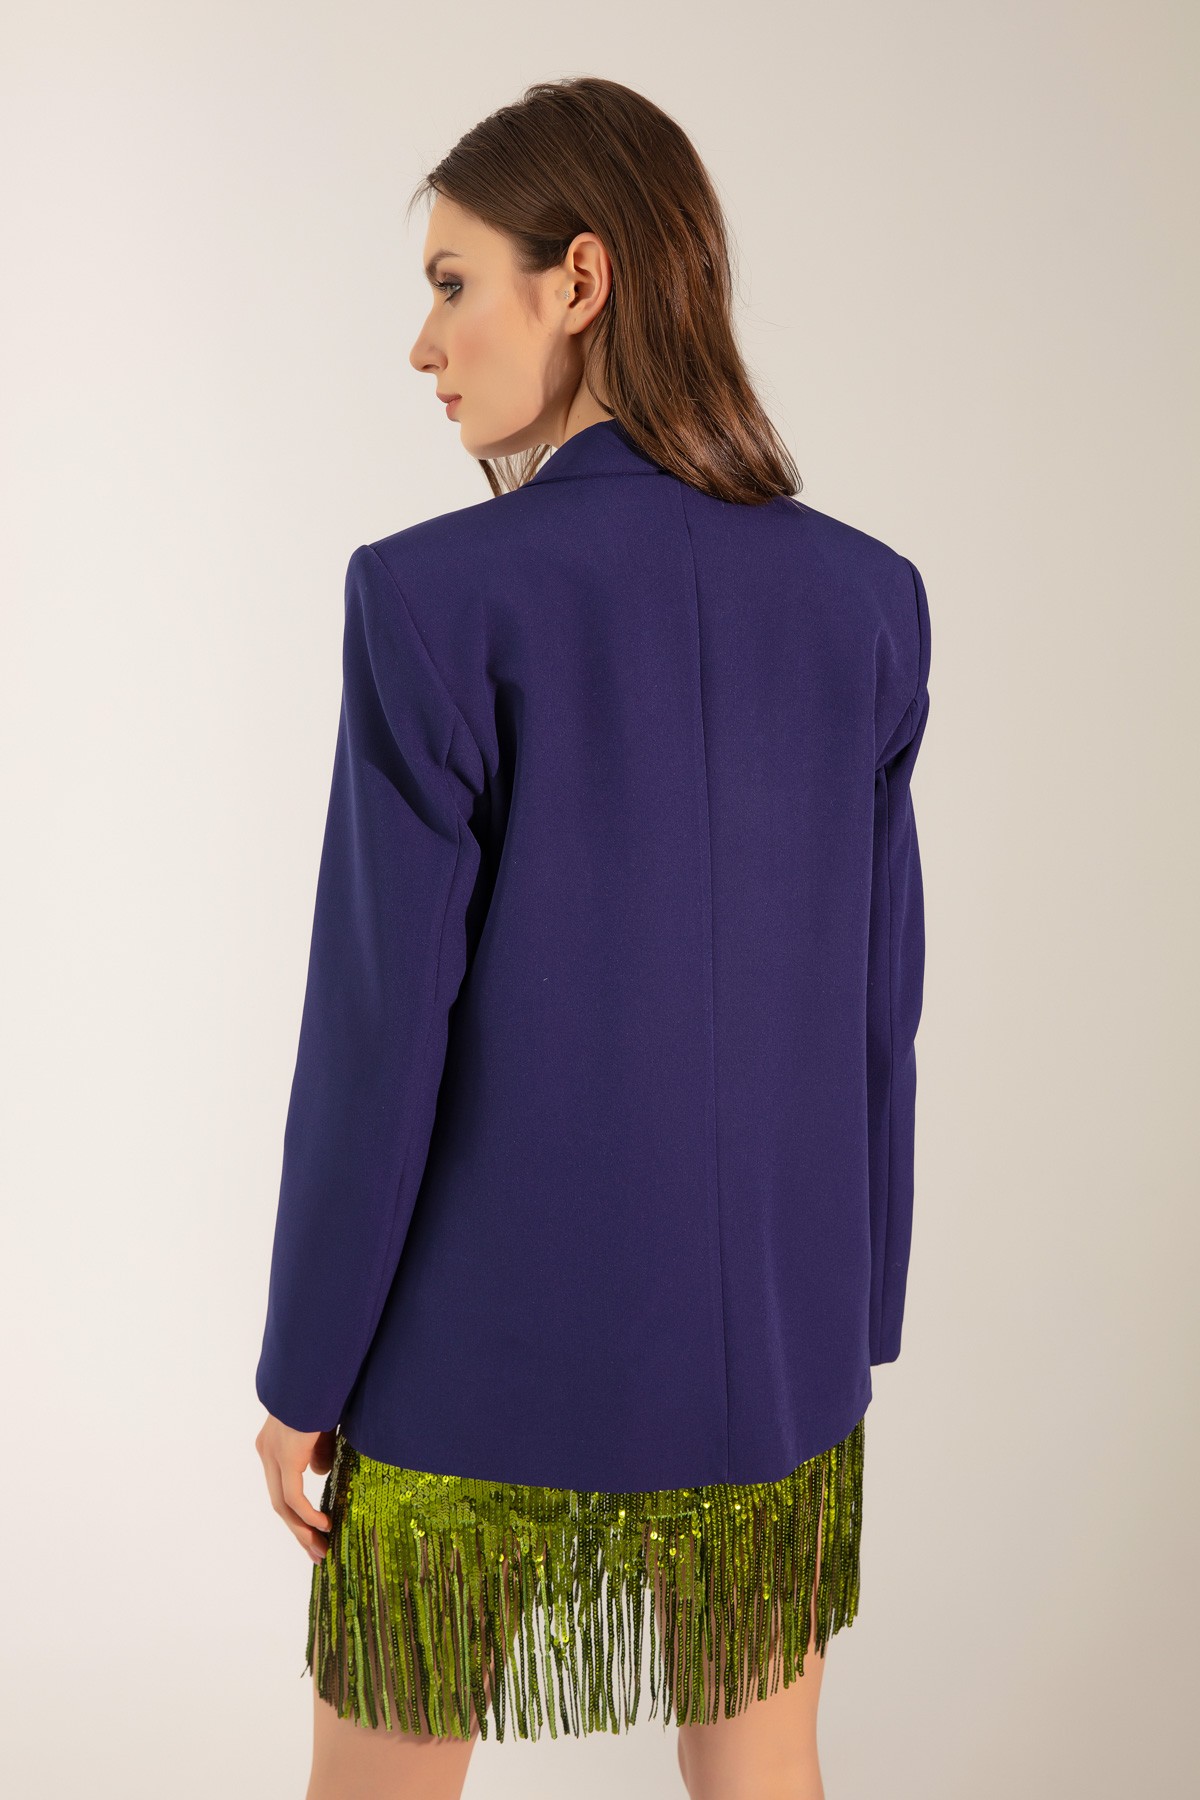 Kadın Oversize Düğmeli Blazer Ceket - Lacivert